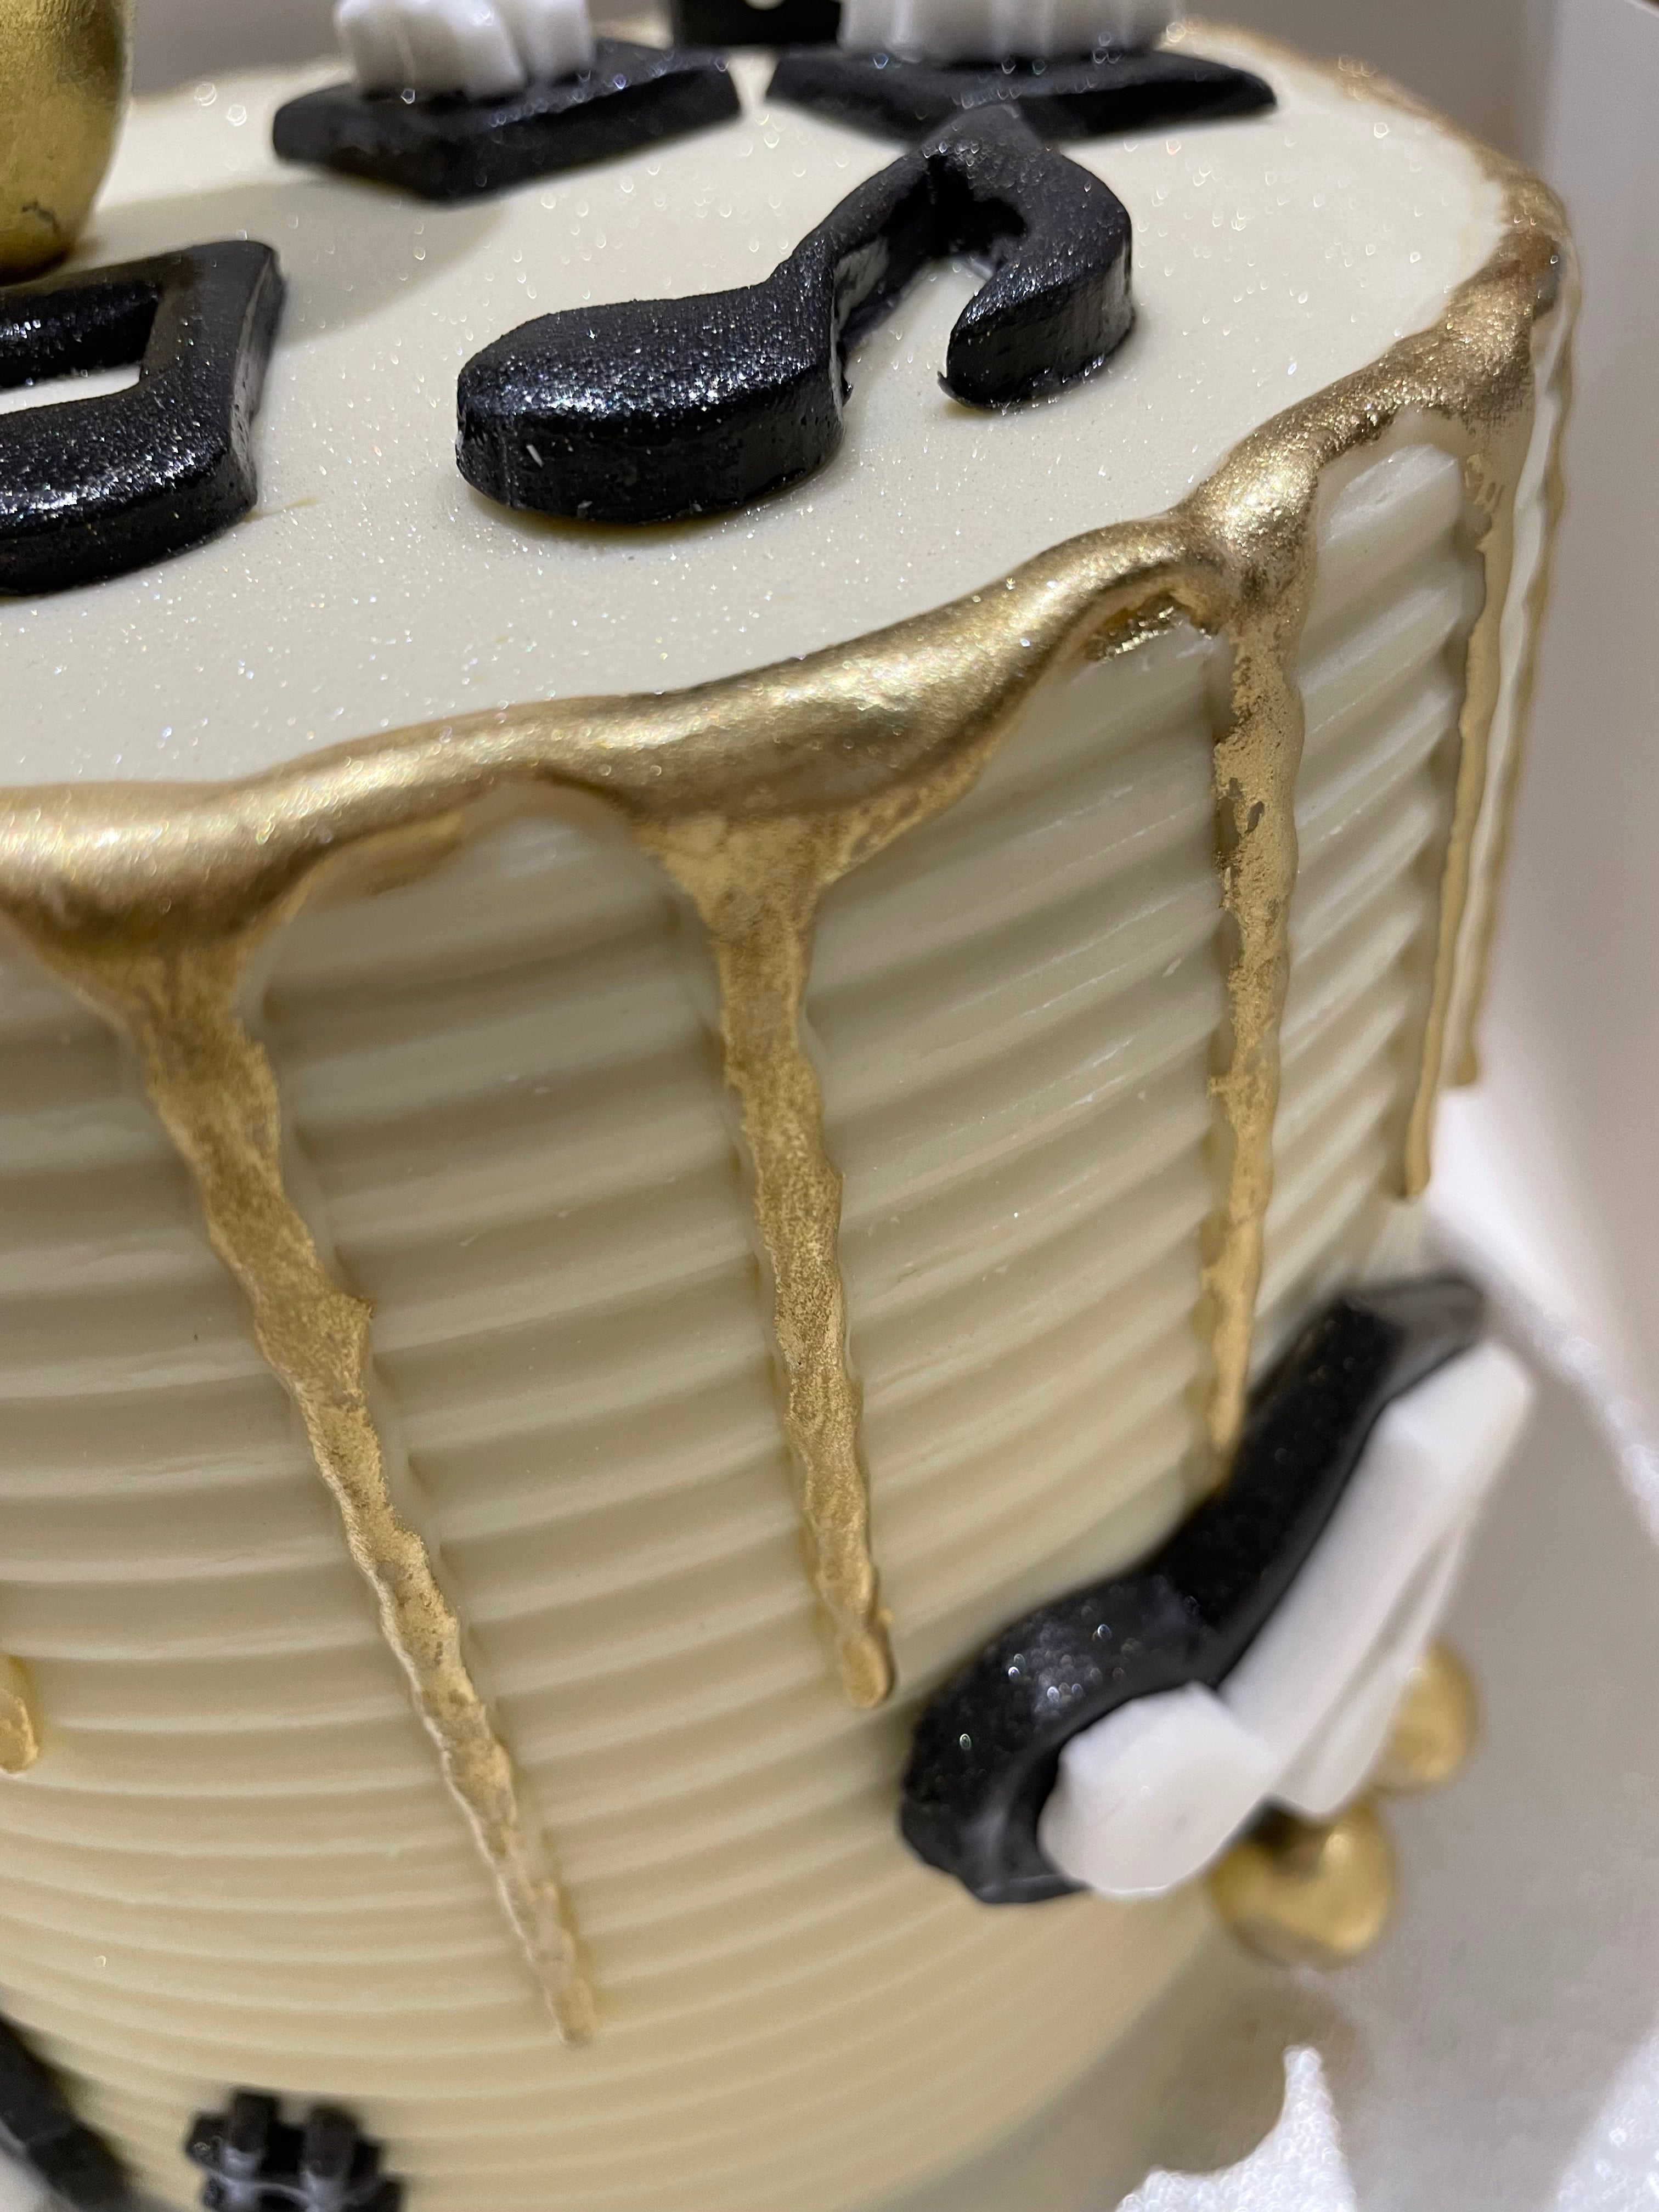 SAXAPHONE MUSICAL GOLD DRIP CAKE